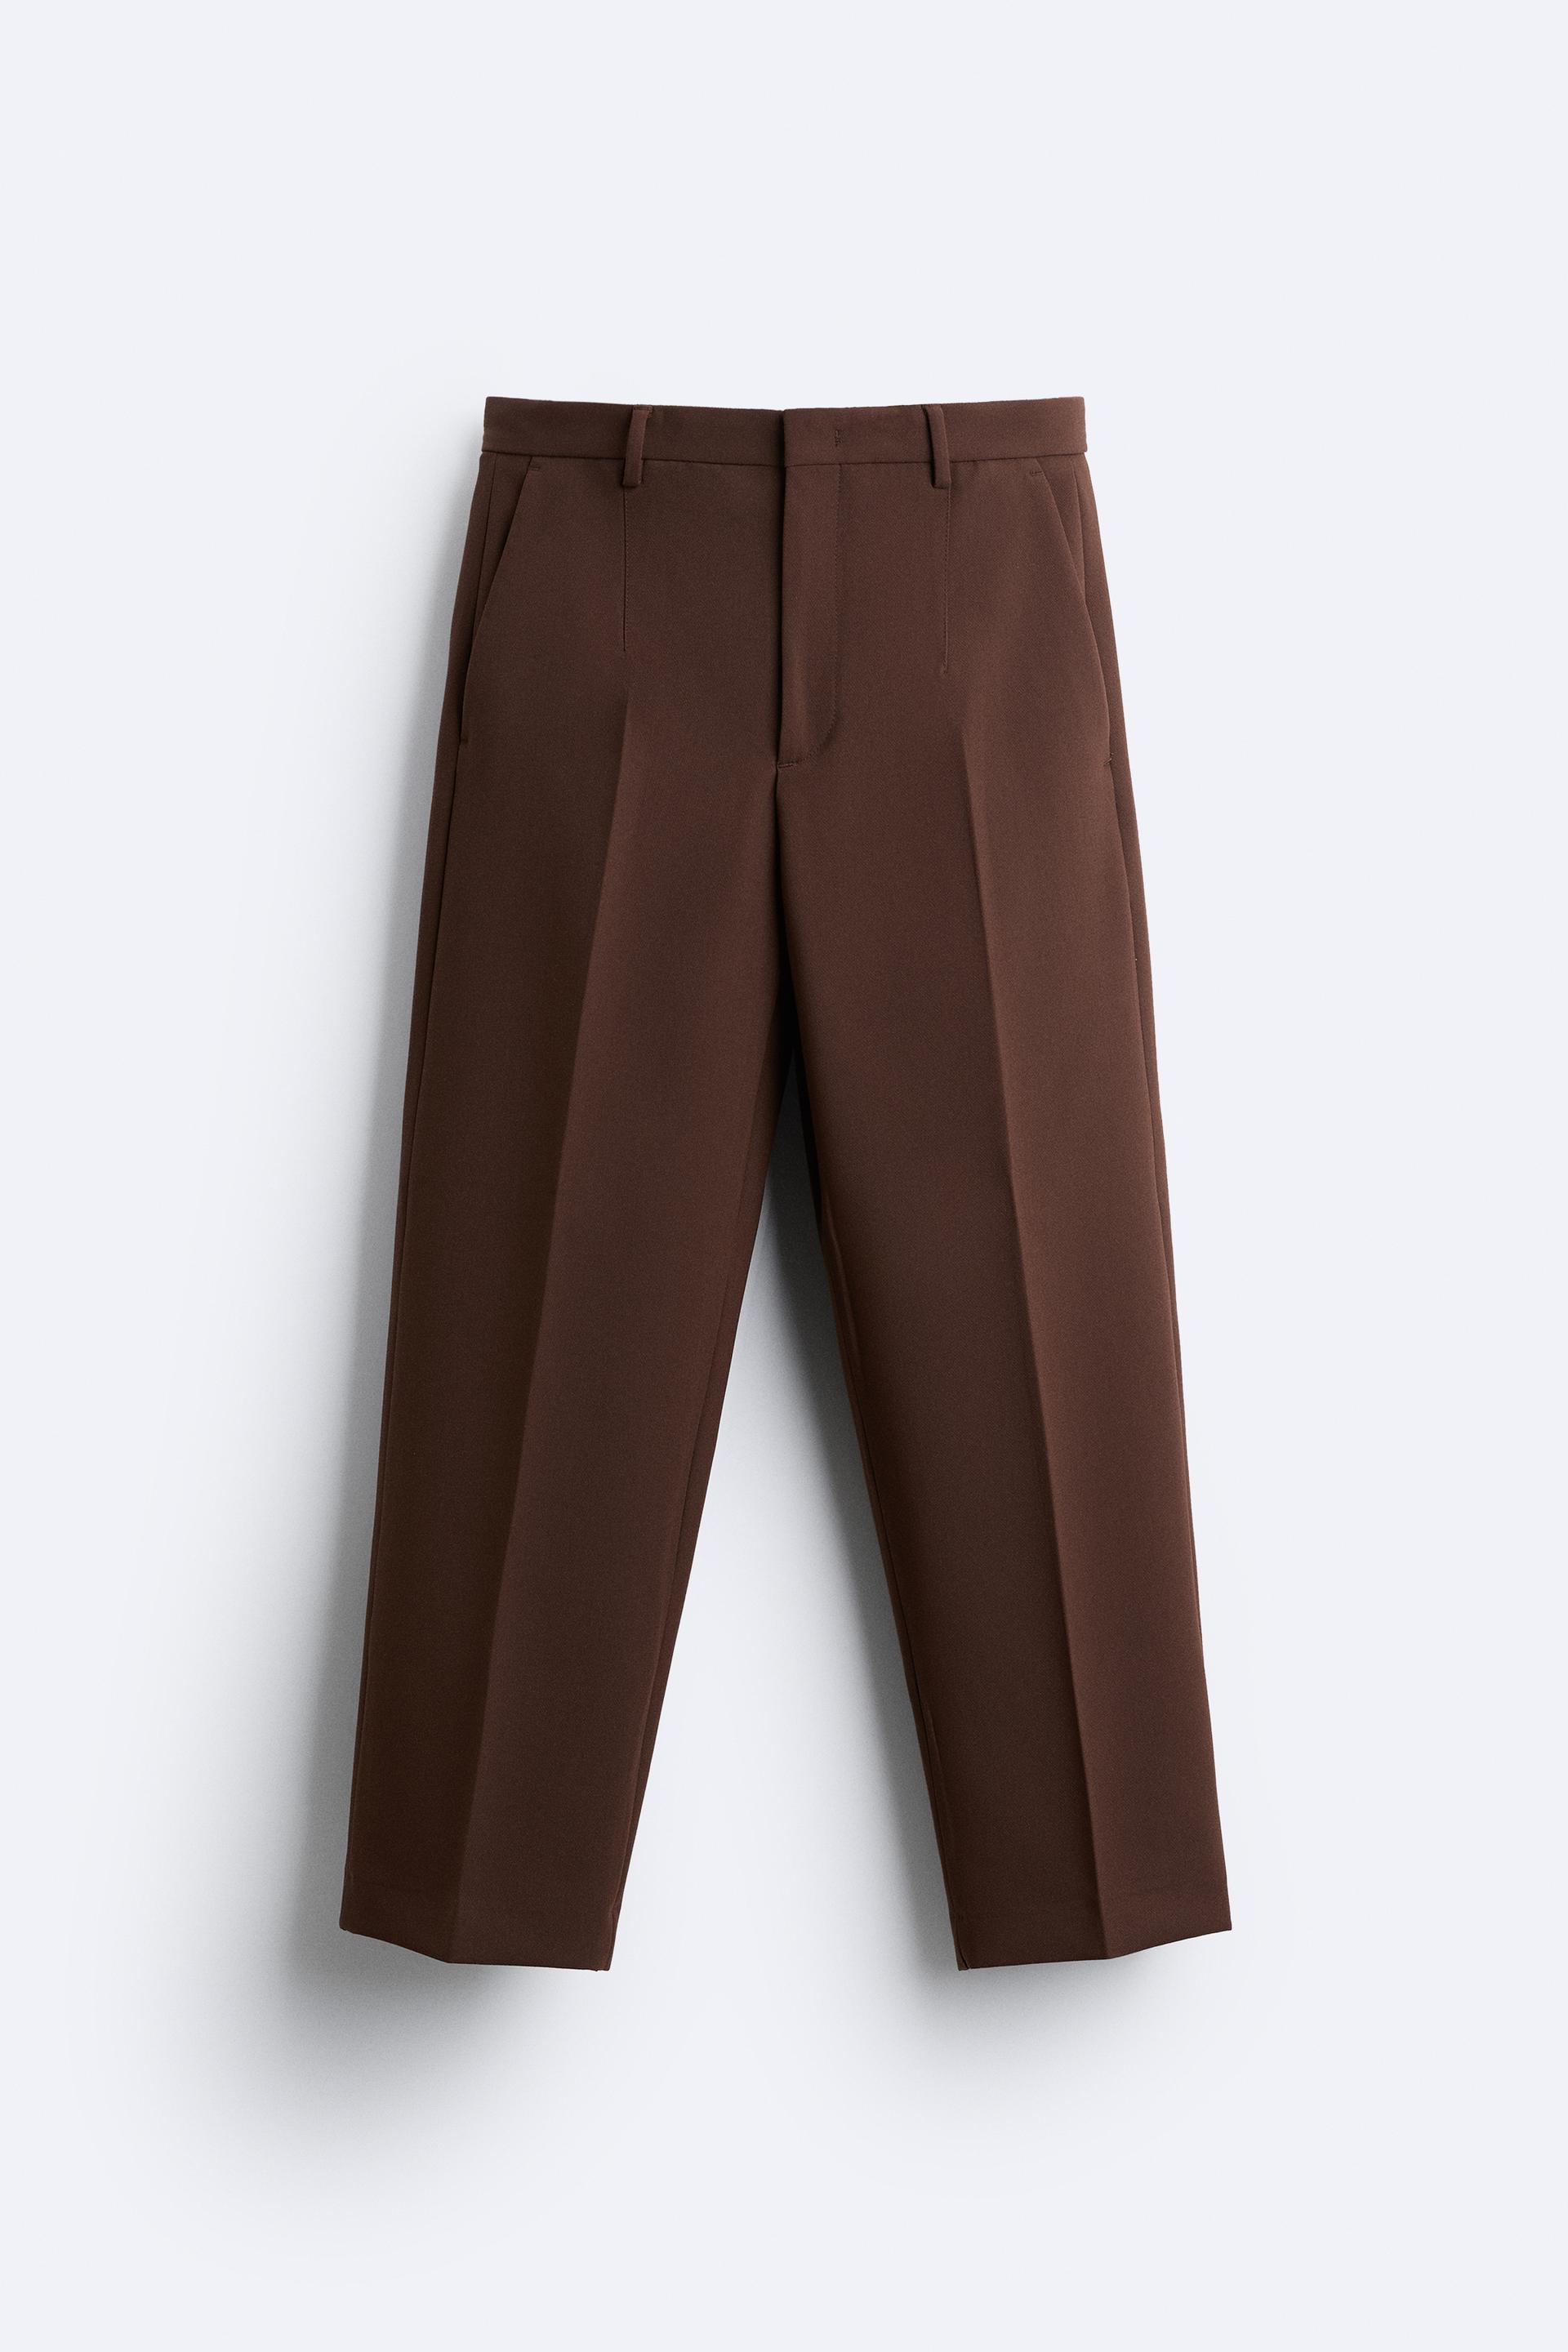 Zara Men Melange 4-way trousers 0706/196/800 (38 EU): Buy Online at Best  Price in UAE 